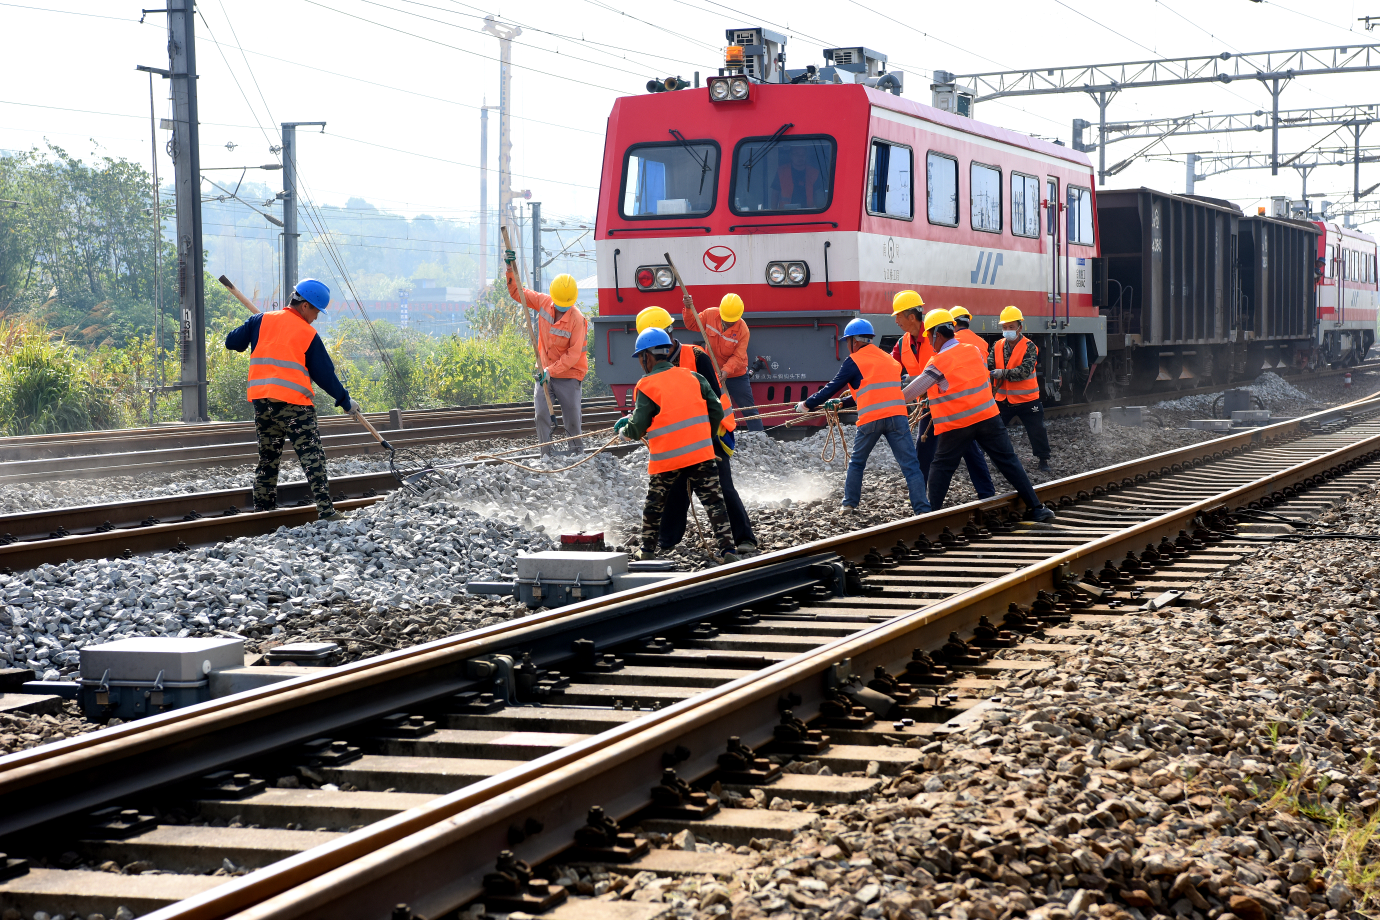 京九铁路江西段开展为期21天的集中维修 确保运输安全